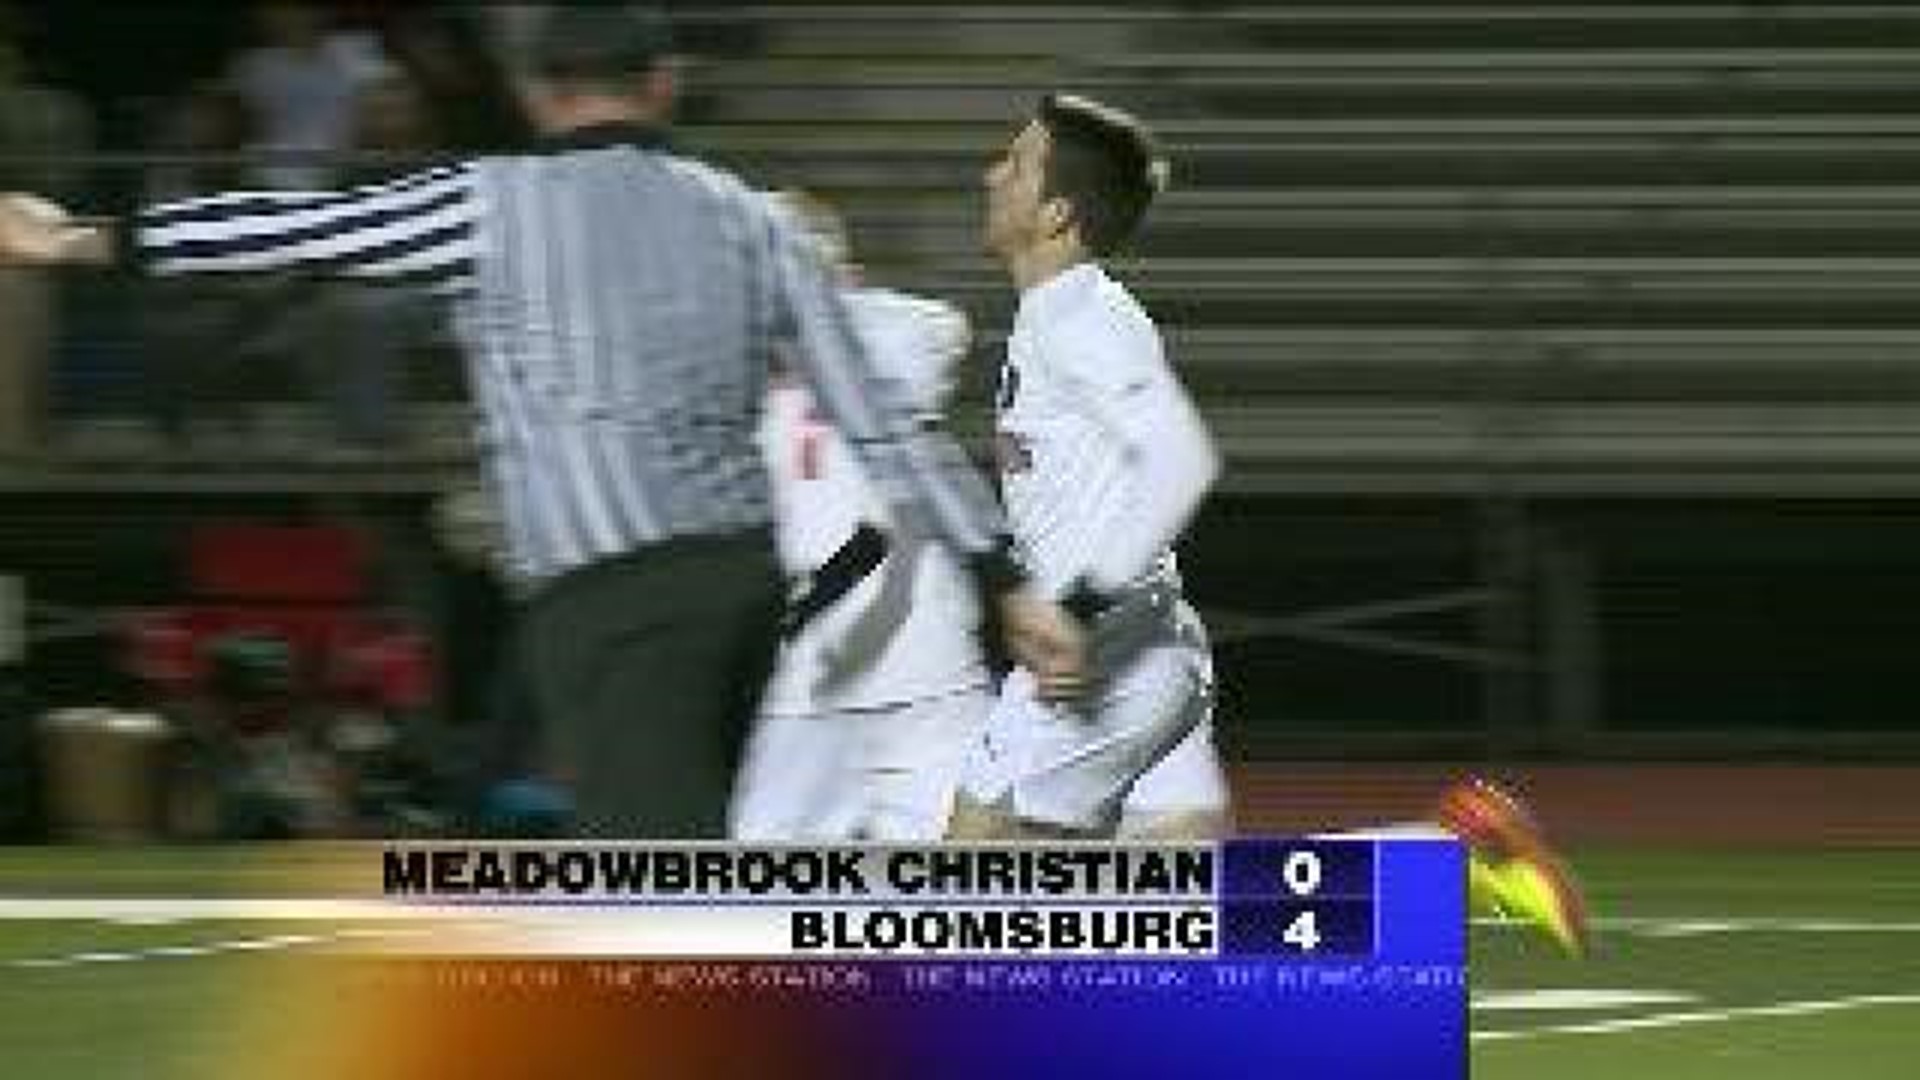 Bloomsburg vs. Meadowbrook Christian